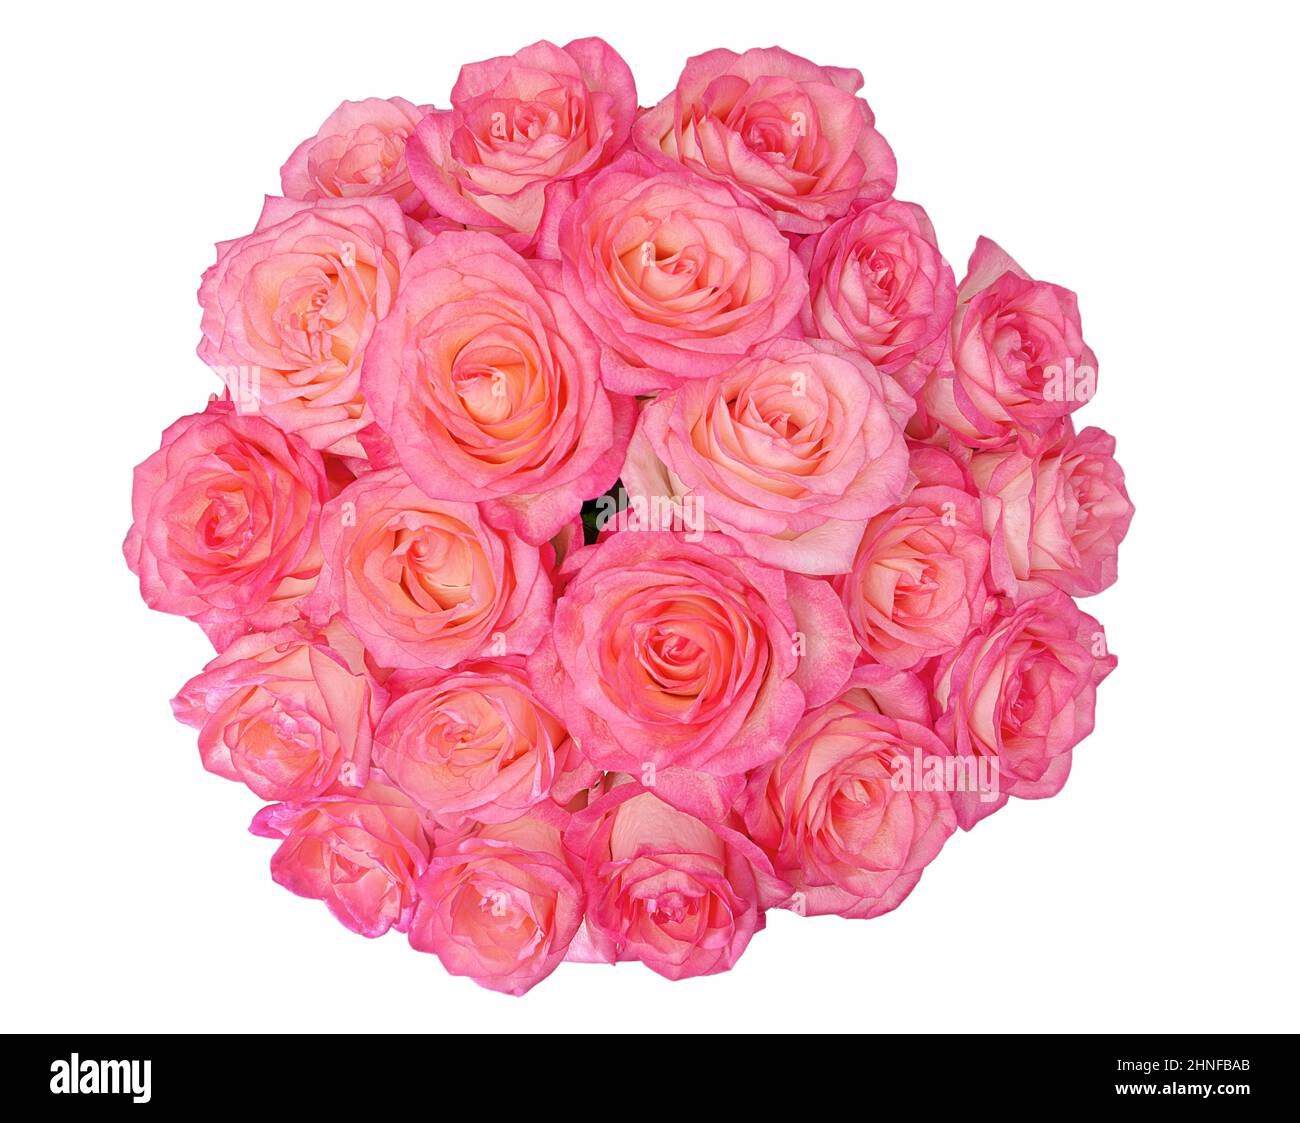 fleurs roses dans un bouquet isolé sur fond blanc Banque D'Images